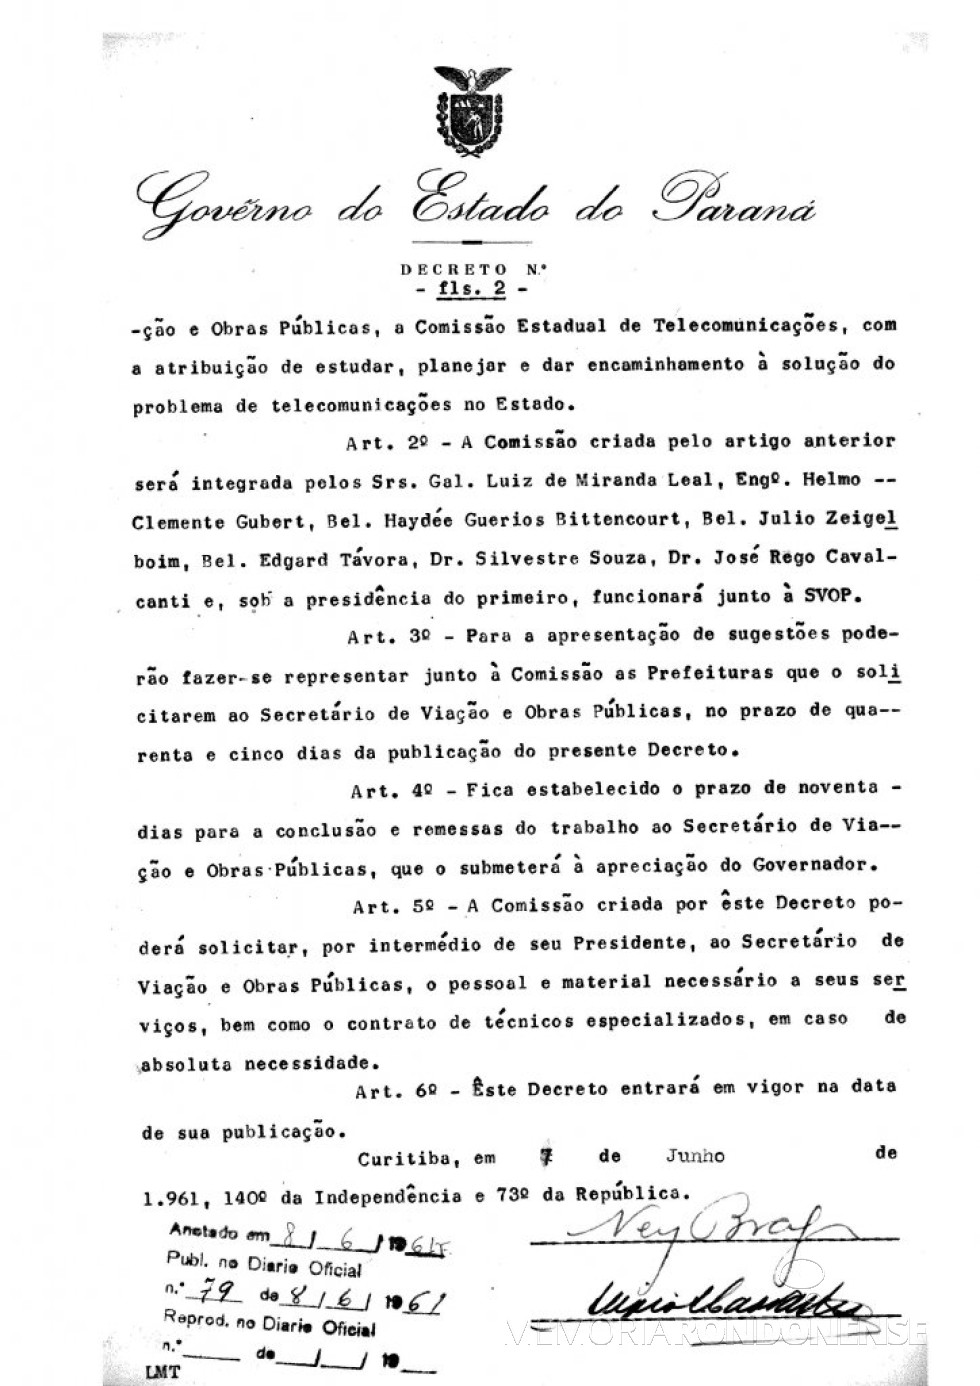 || Página final do decreto nº 2494, que trata da criação da Comissão Estadual de Telecomunicações (CET), em junho de 1961.
Imagem: Arquivo Público do Paraná - FOTO 7 -